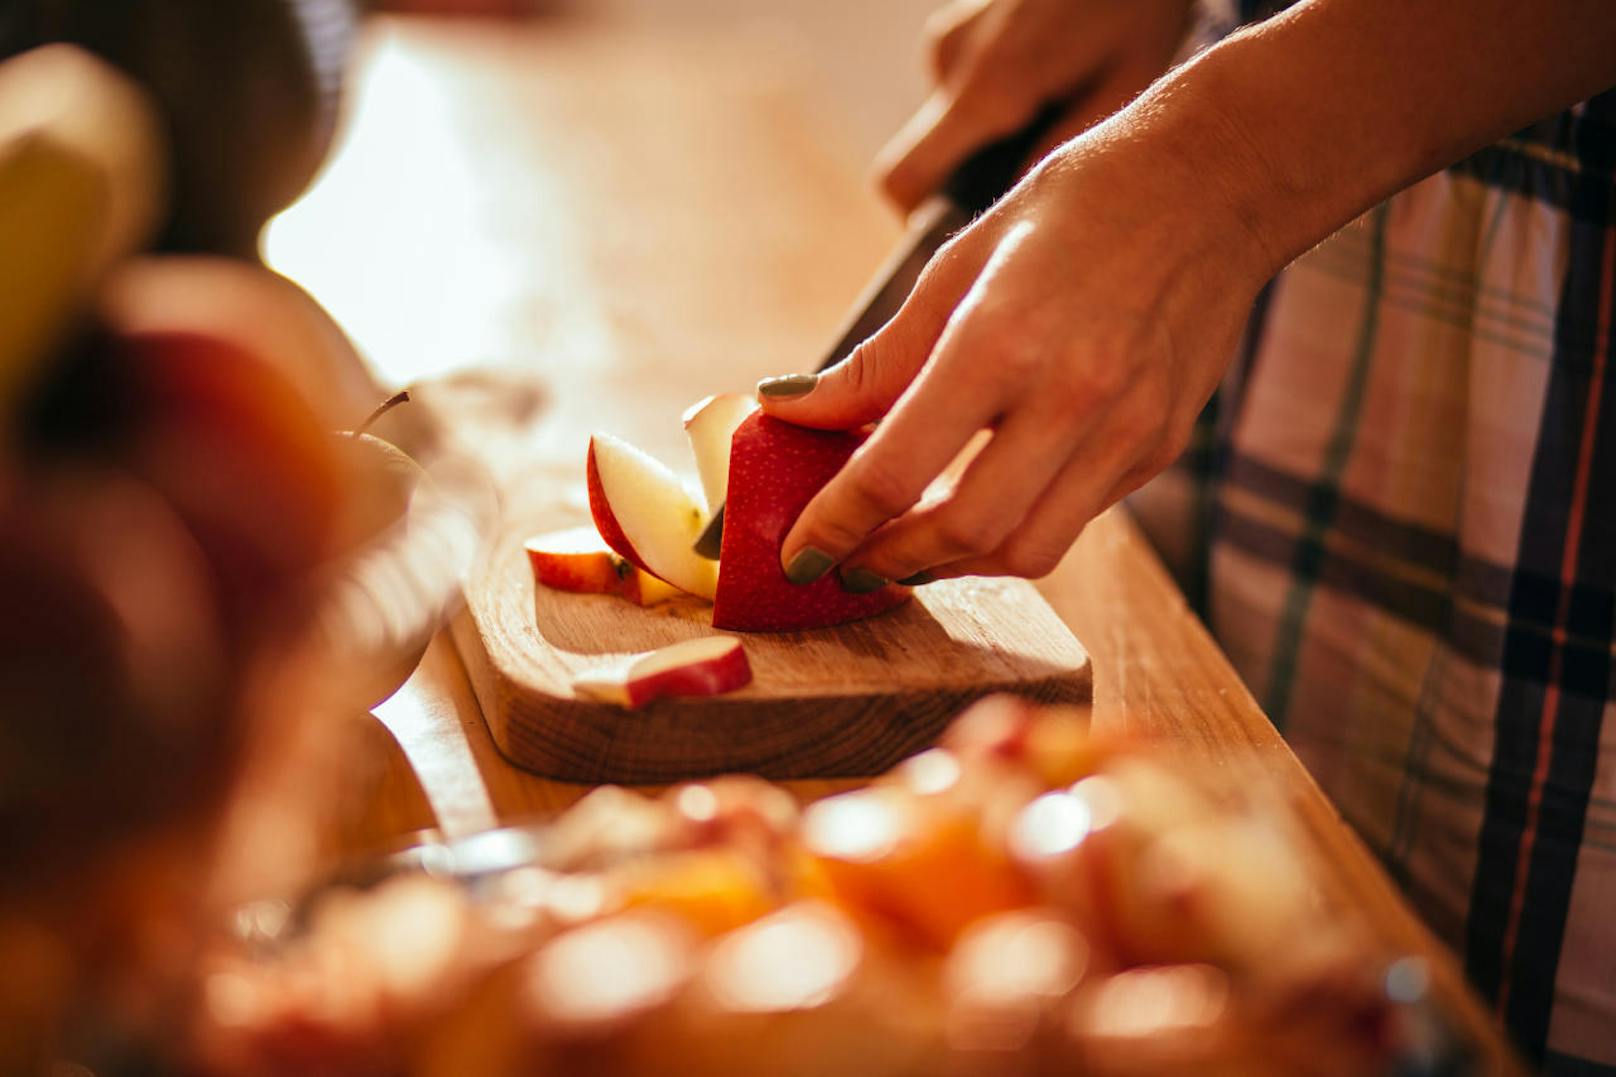 Doch nicht nur die Sorte spielt bei der Verträglichkeit angeblich eine Rolle. Auch die Zubereitungsart soll entscheidend sein. Während frische Äpfel häufig Reaktionen auslösen, werden gekochte oder geriebene Äpfel meist besser vertragen.